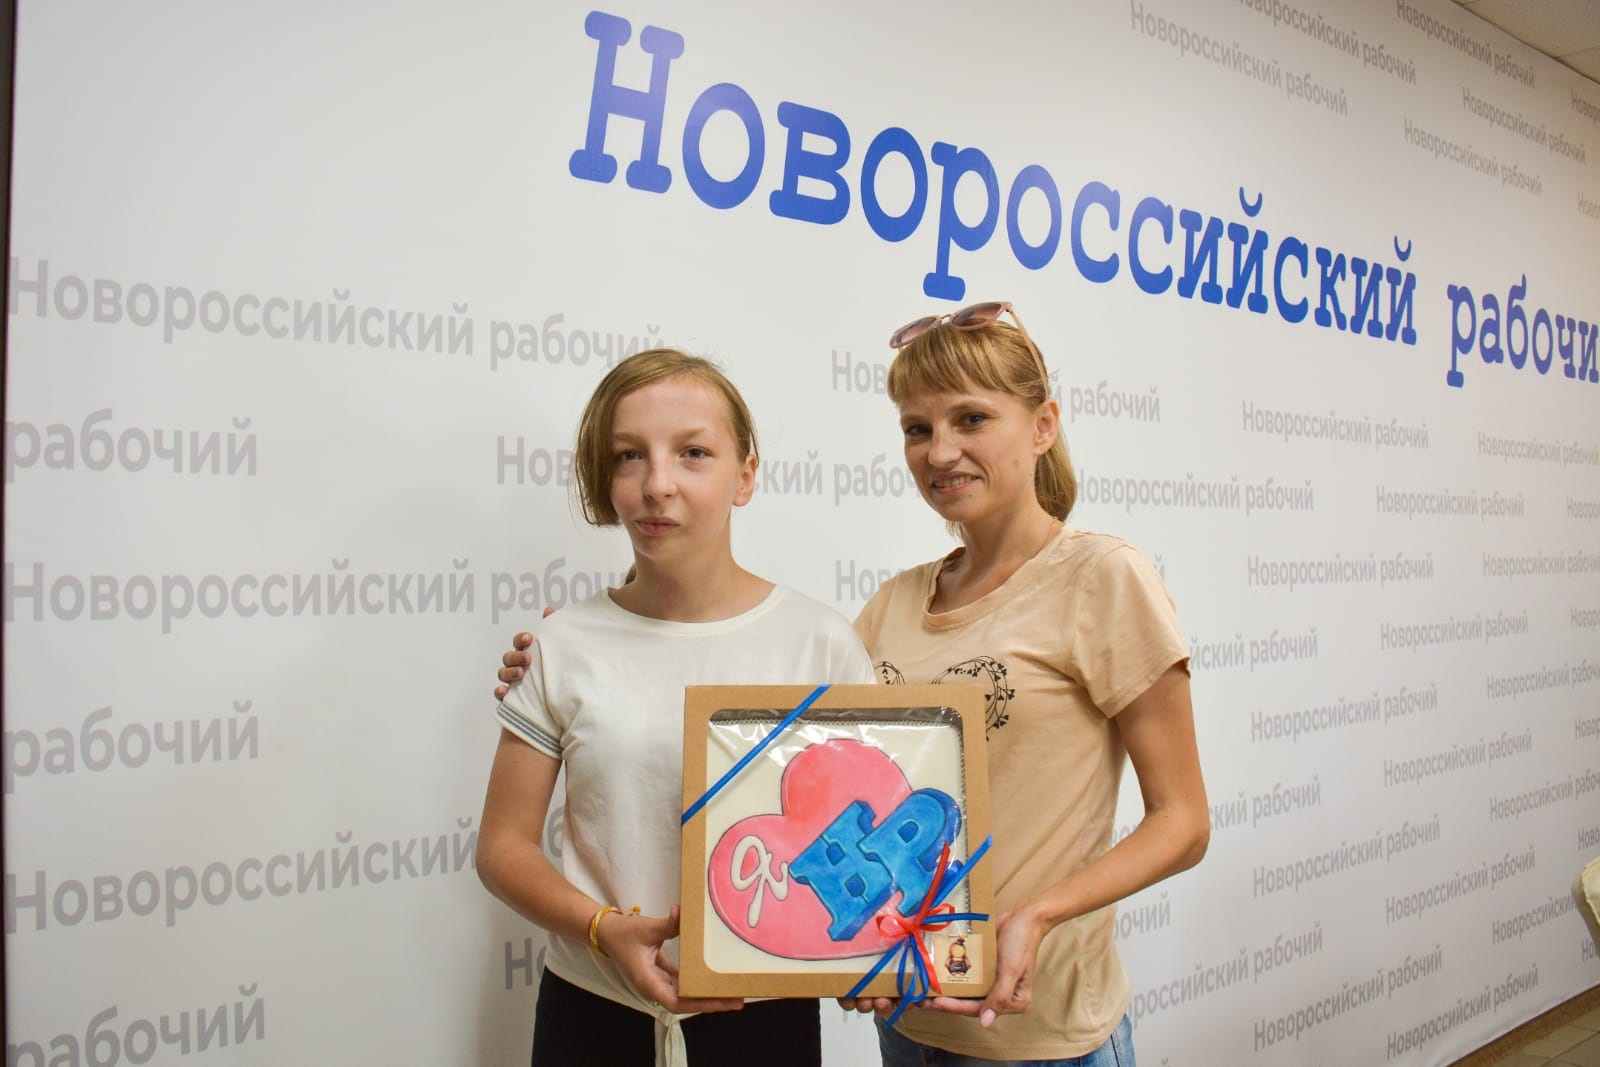 Девочка из Новороссийска, страдающая редким генетическим заболеванием, стала героиней федеральных телеканалов